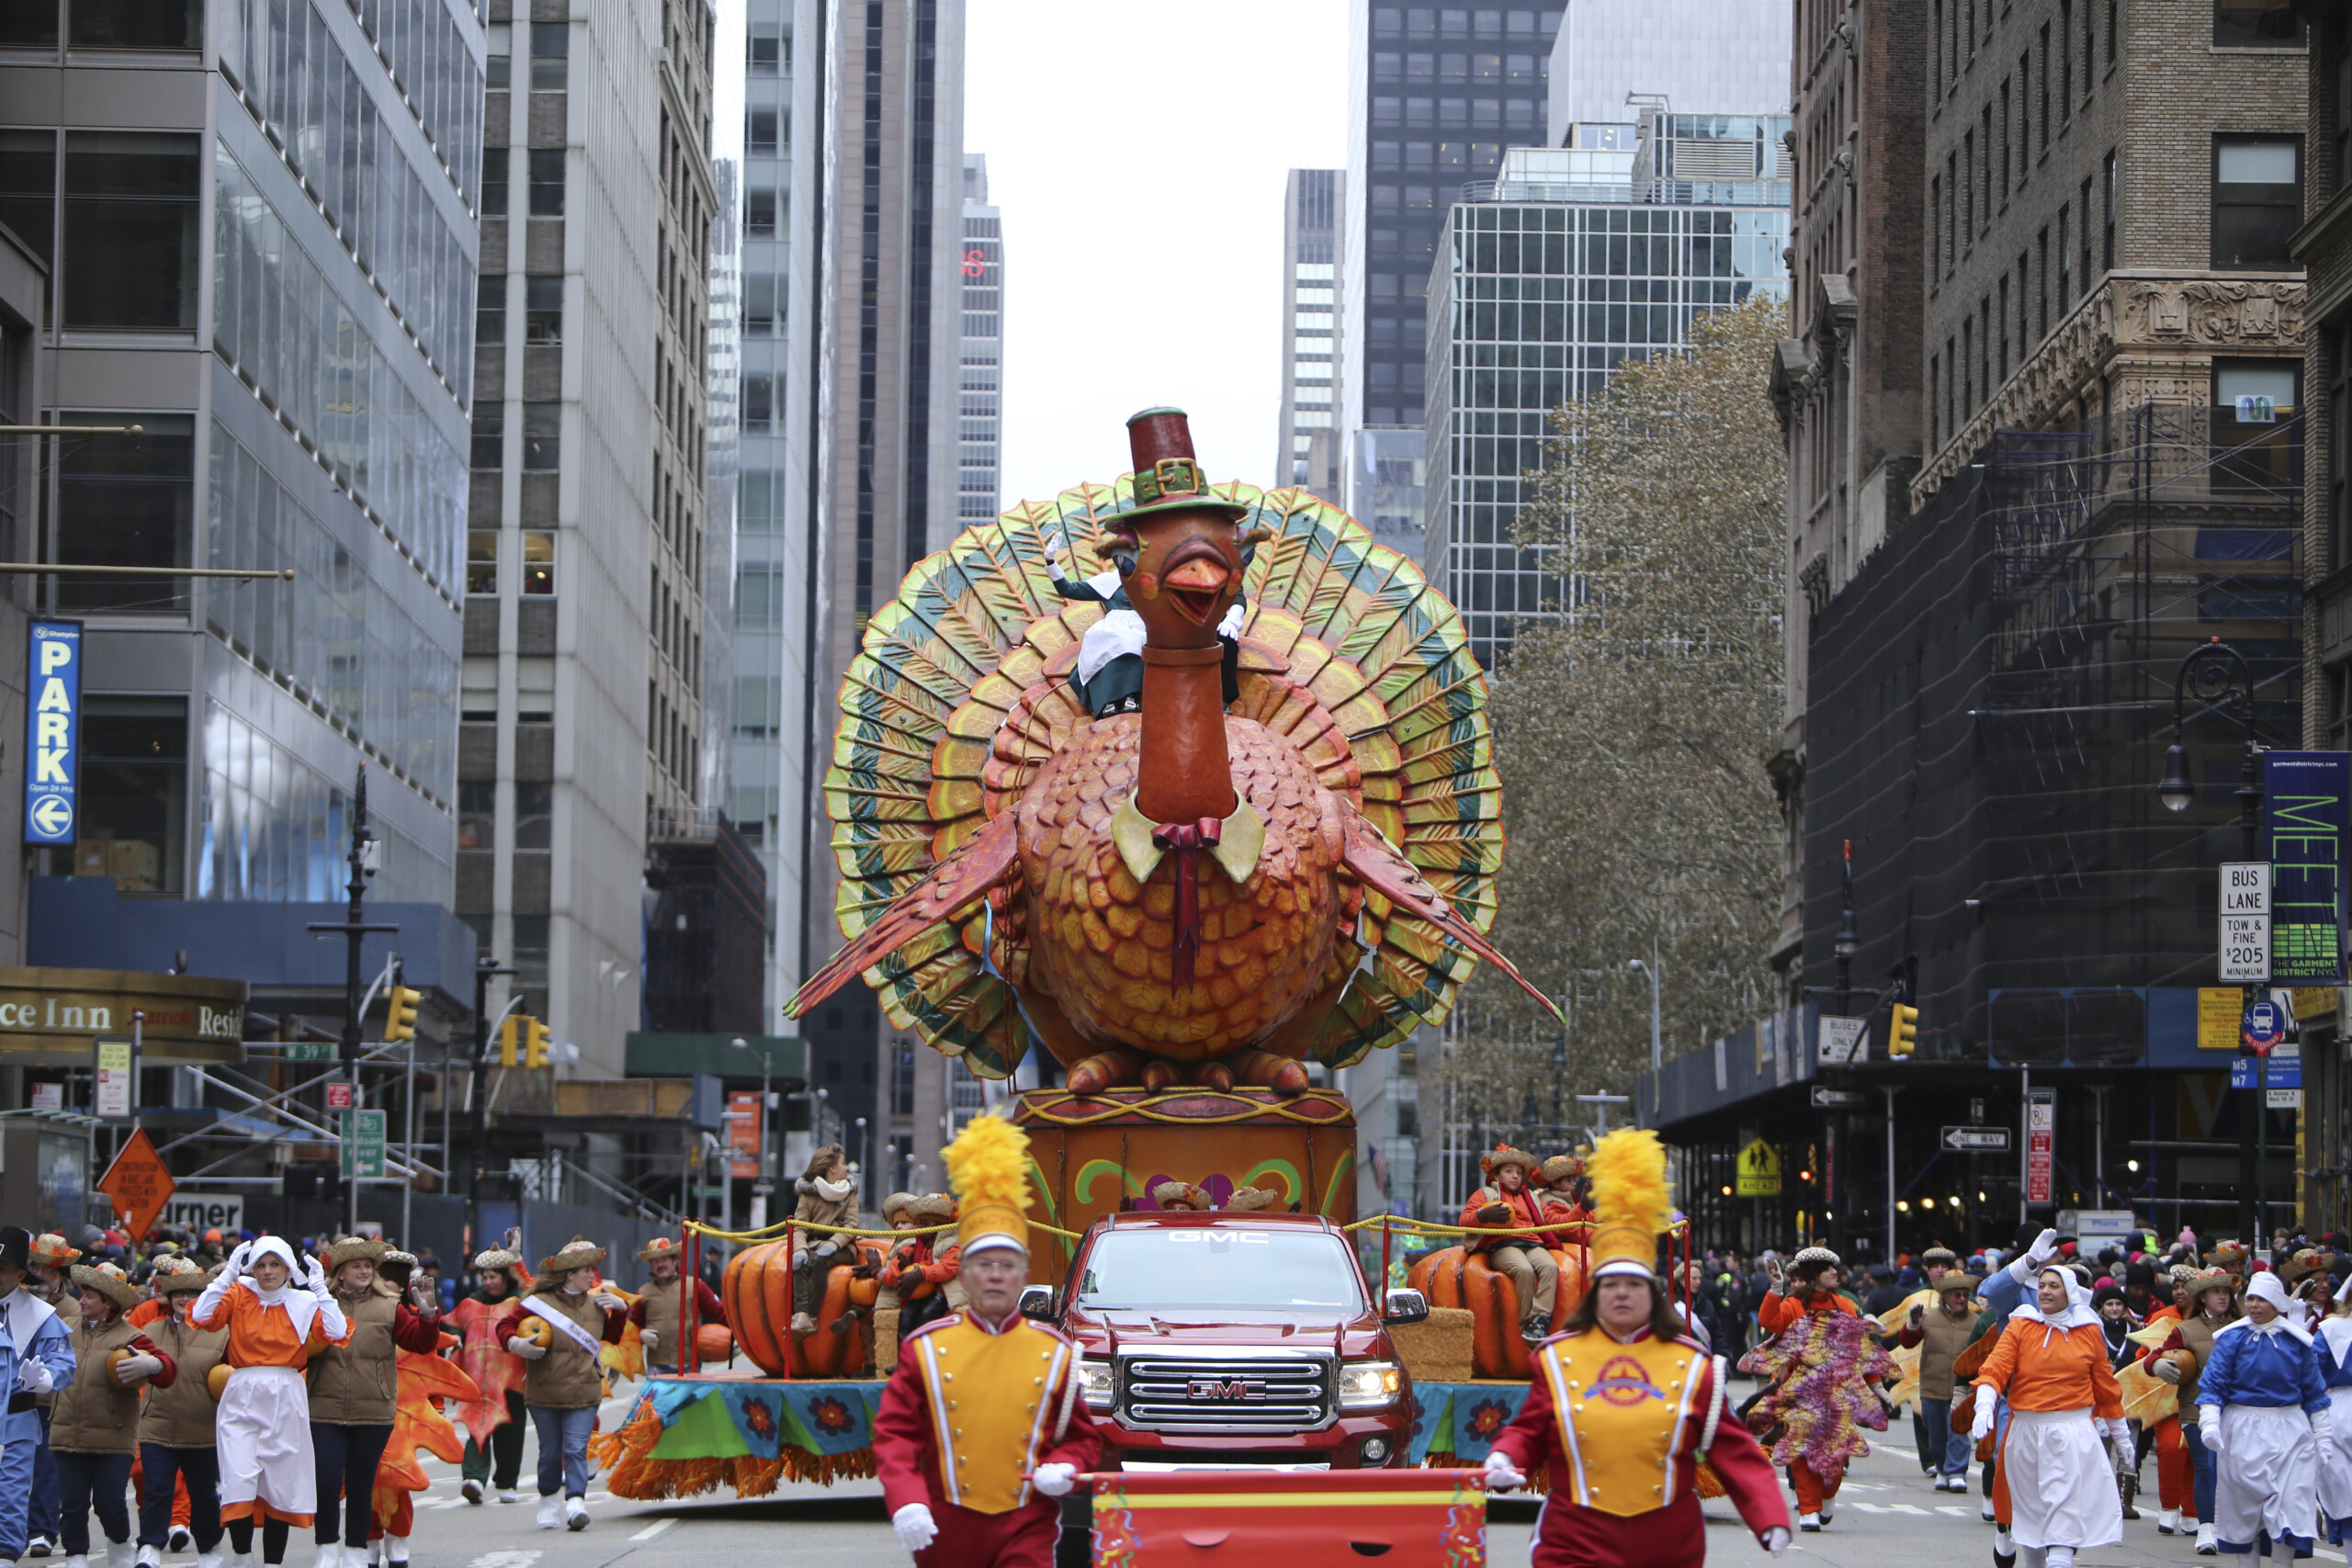 NOWY JORK - 27 LISTOPADA 2014: 88. doroczna parada z okazji Święta Dziękczynienia Macy's rozciągająca się od Manhattanu Upper West Side do Herald Square, oglądana przez 350 000 widzów, licencjat: shutterstock/By